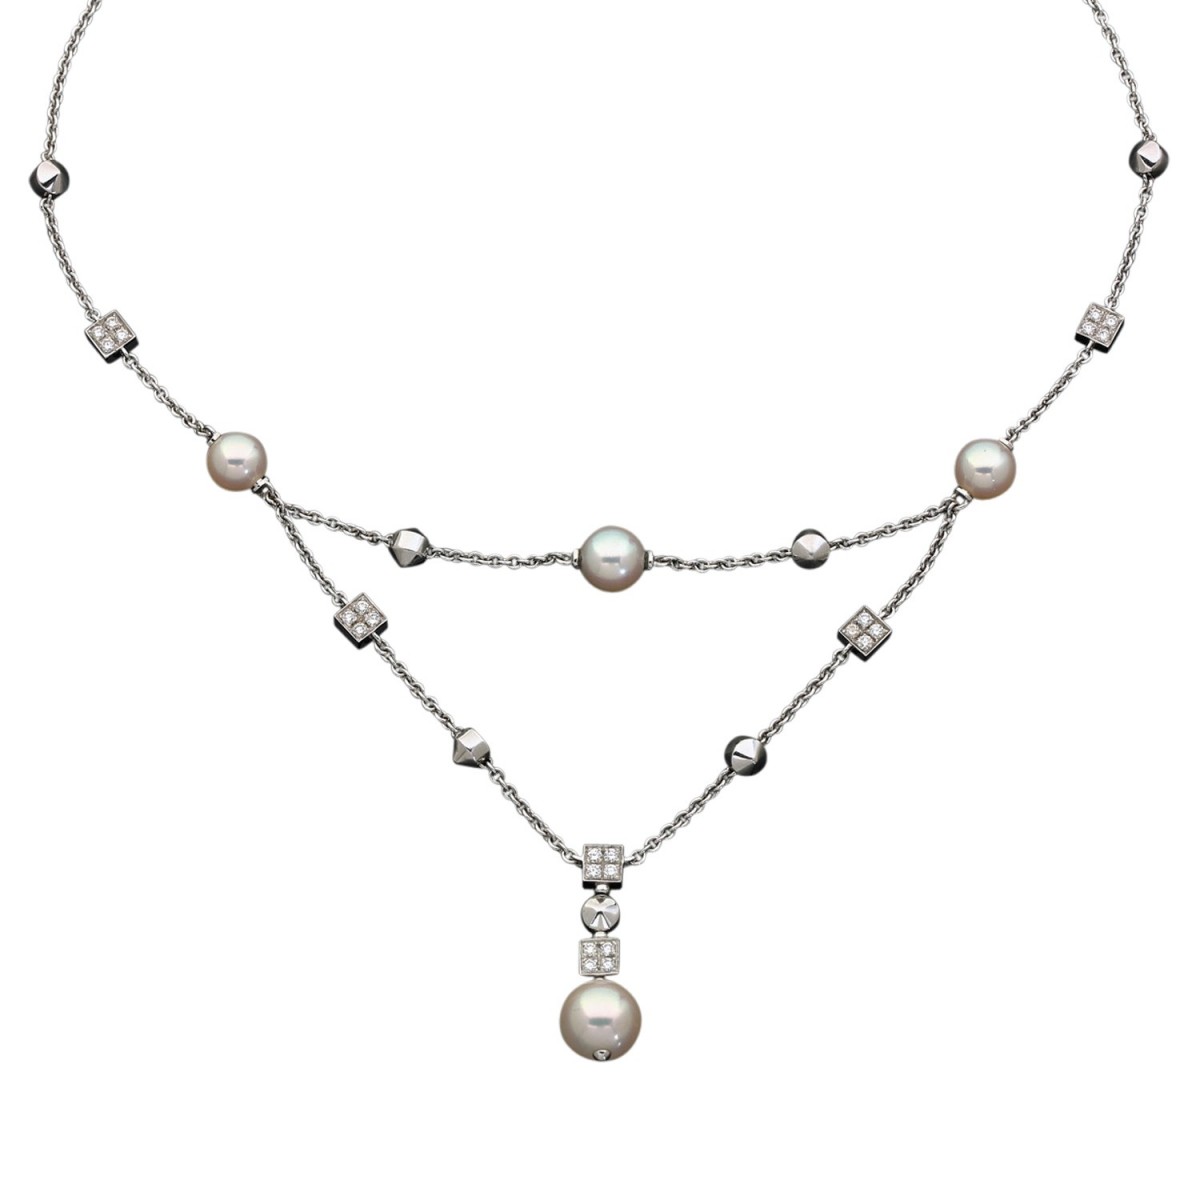 Bulgari Lucea necklace